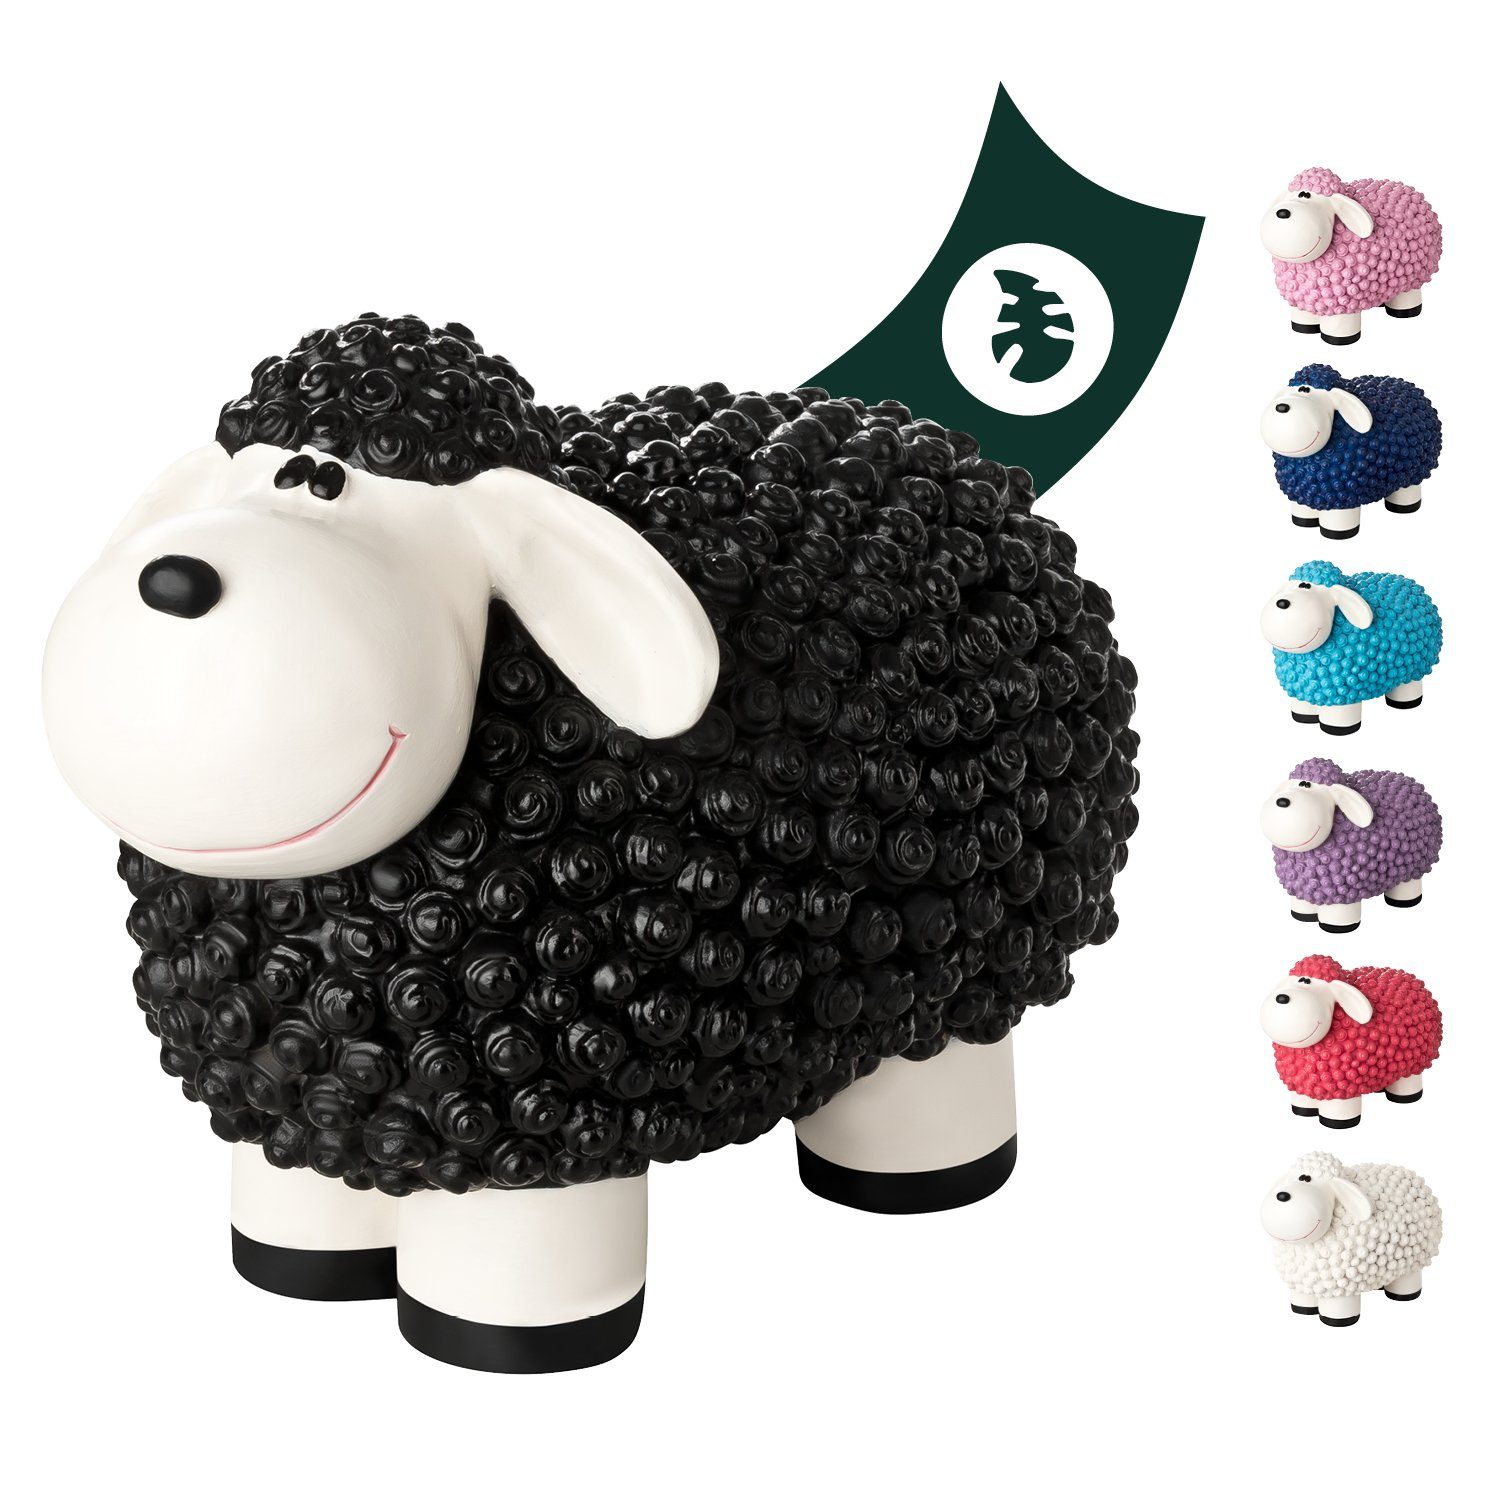 - VERDOBA für Wetterfeste Mini - Schaf Schaf Gartenfigur Gartenfigur Schwarz Außen, Deko Gartendeko Polyresin